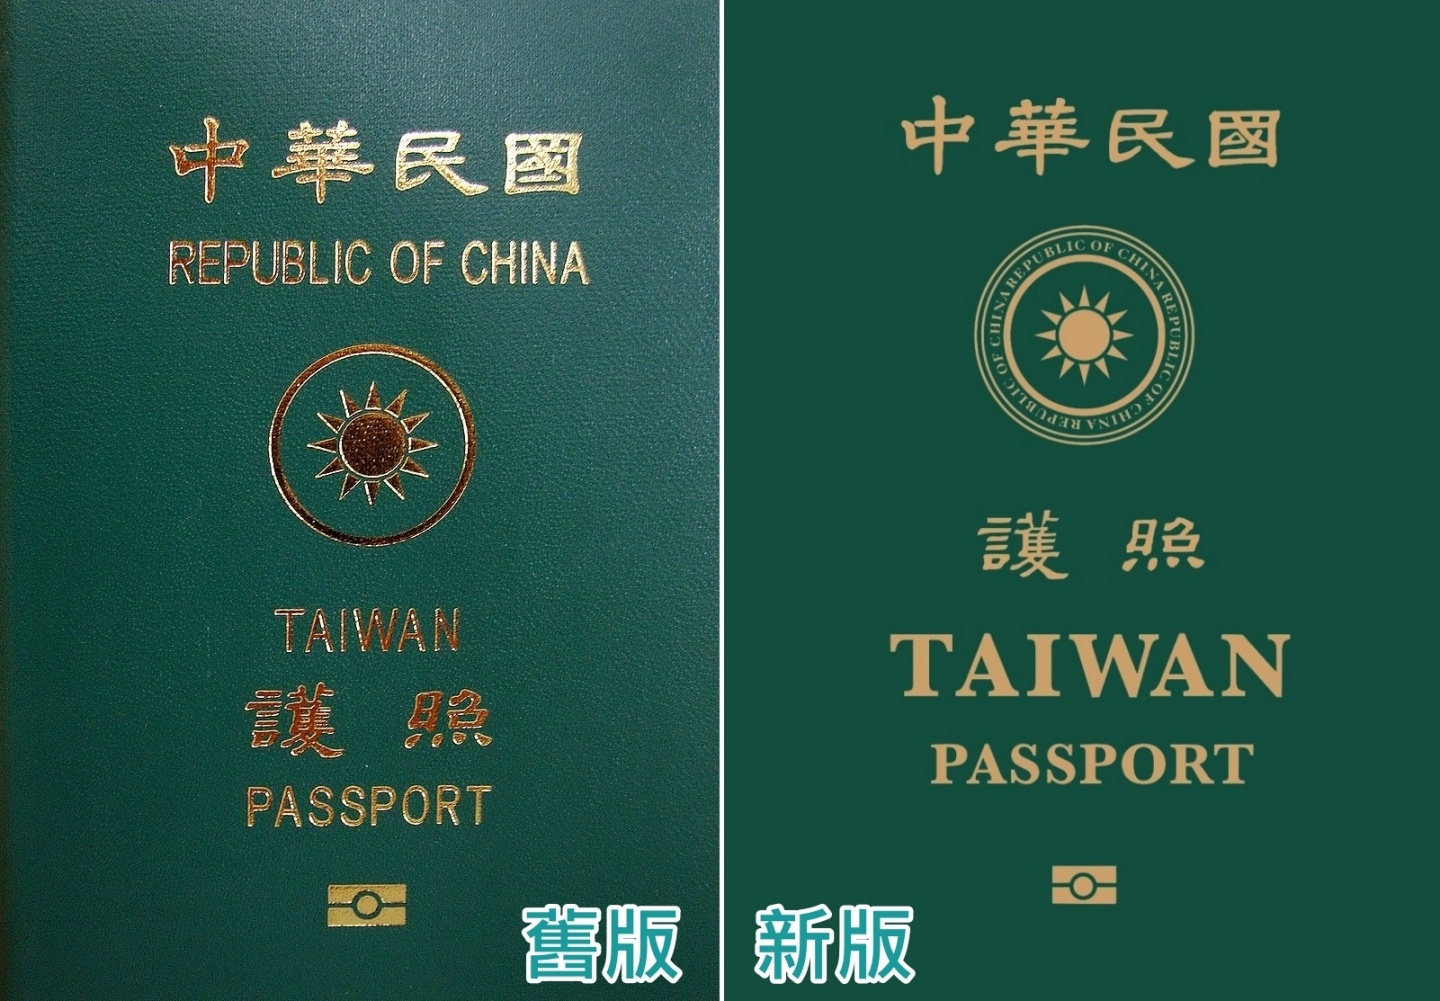 新版護照長這樣！放大『 TAIWAN PASSPORT 』加強辨識度，明年一月換發